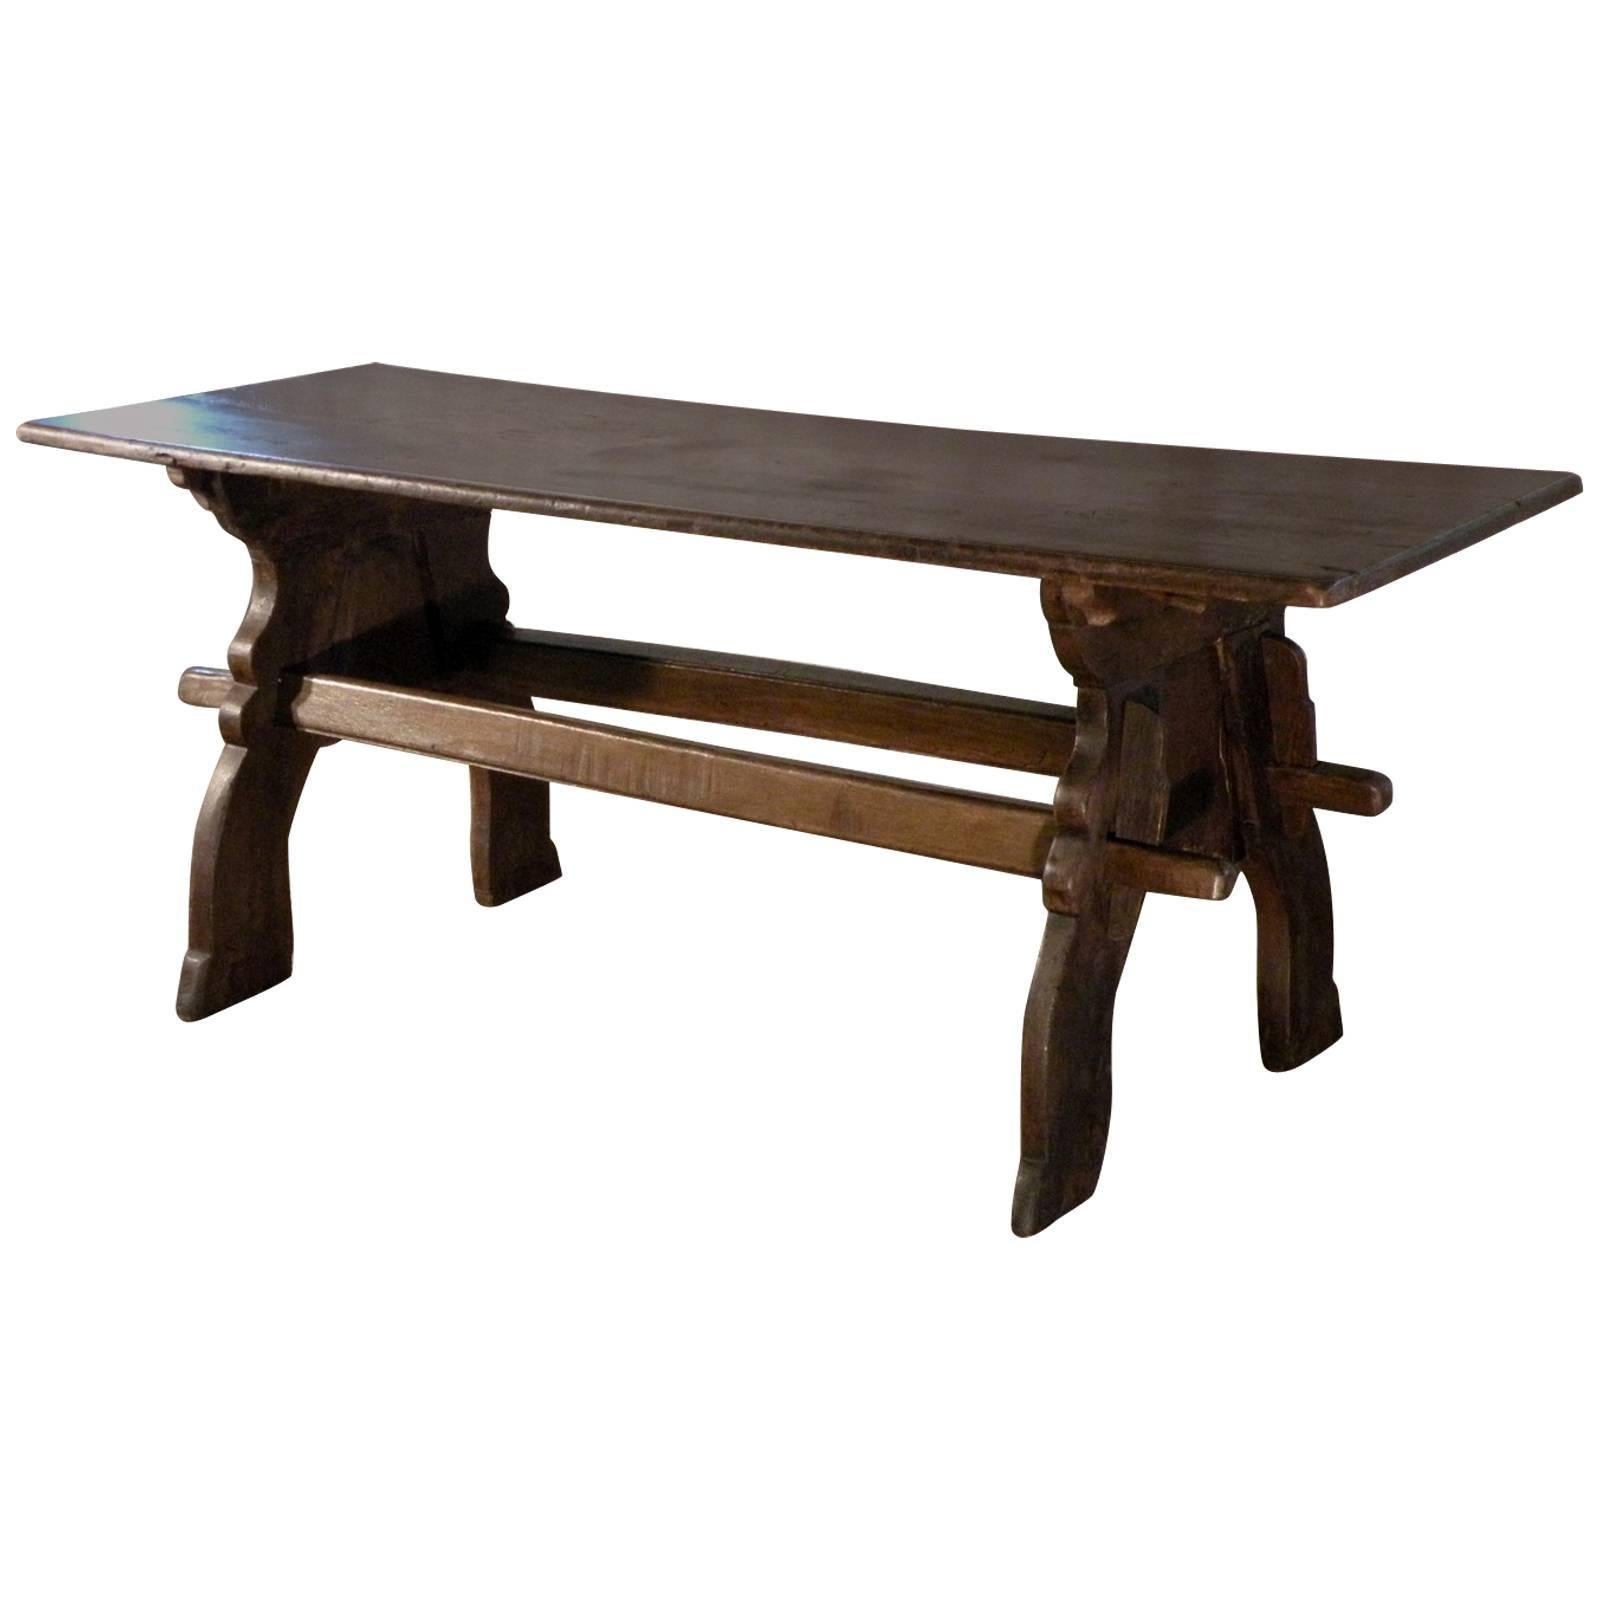 Table à tréteaux en chêne d'Europe du Nord de la fin du XVIe siècle de style gothique